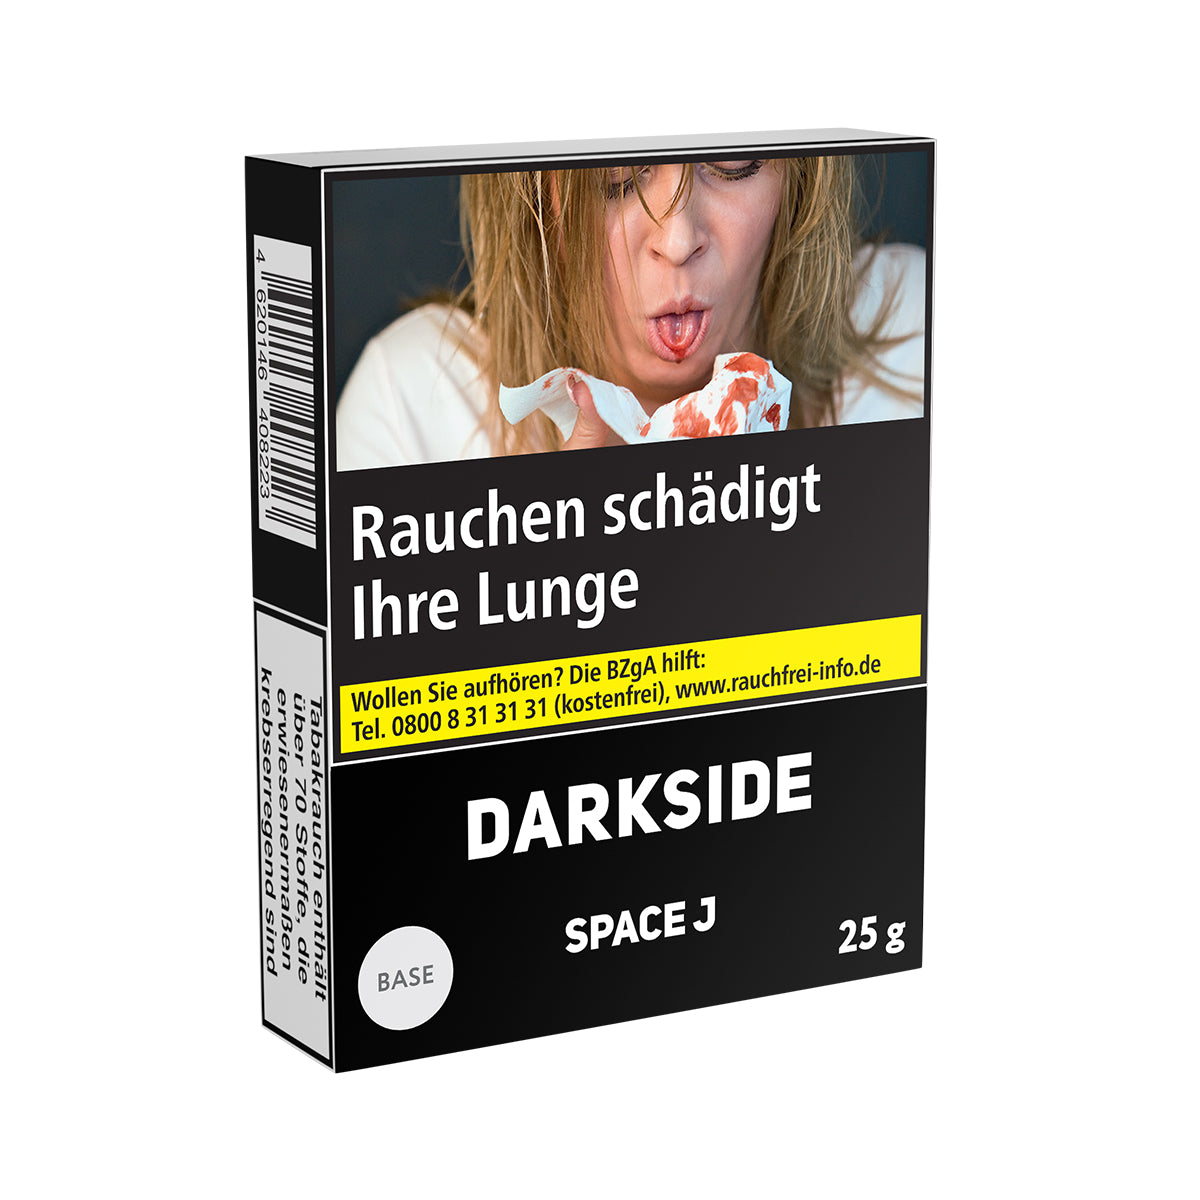 Darkside Base - Space J (25g)